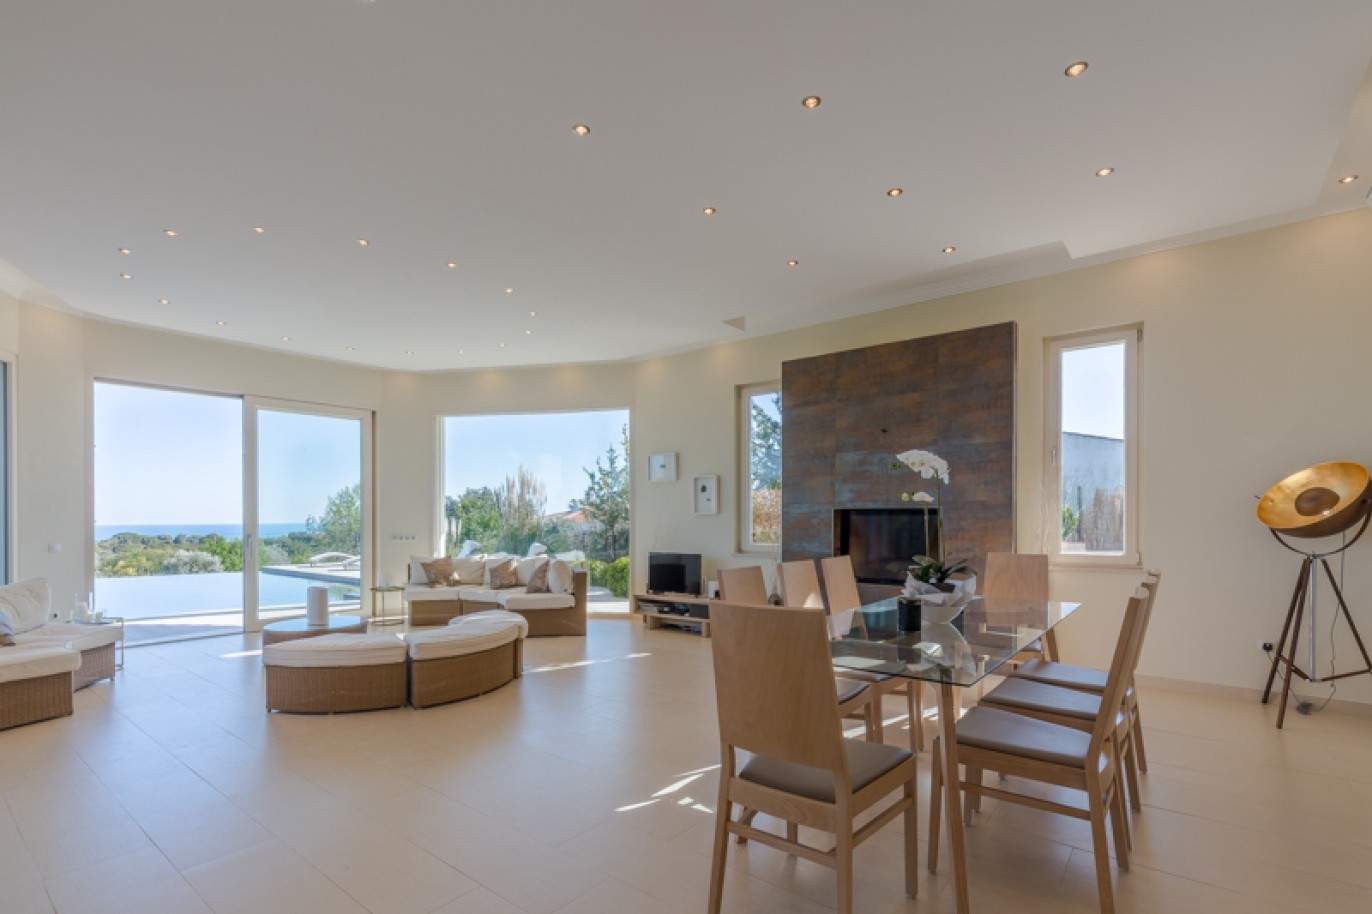 Freistehende villa zum Verkauf mit Meerblick, in der Nähe von Strand und golf, Carvoeiro, Algarve, Portugal_76408